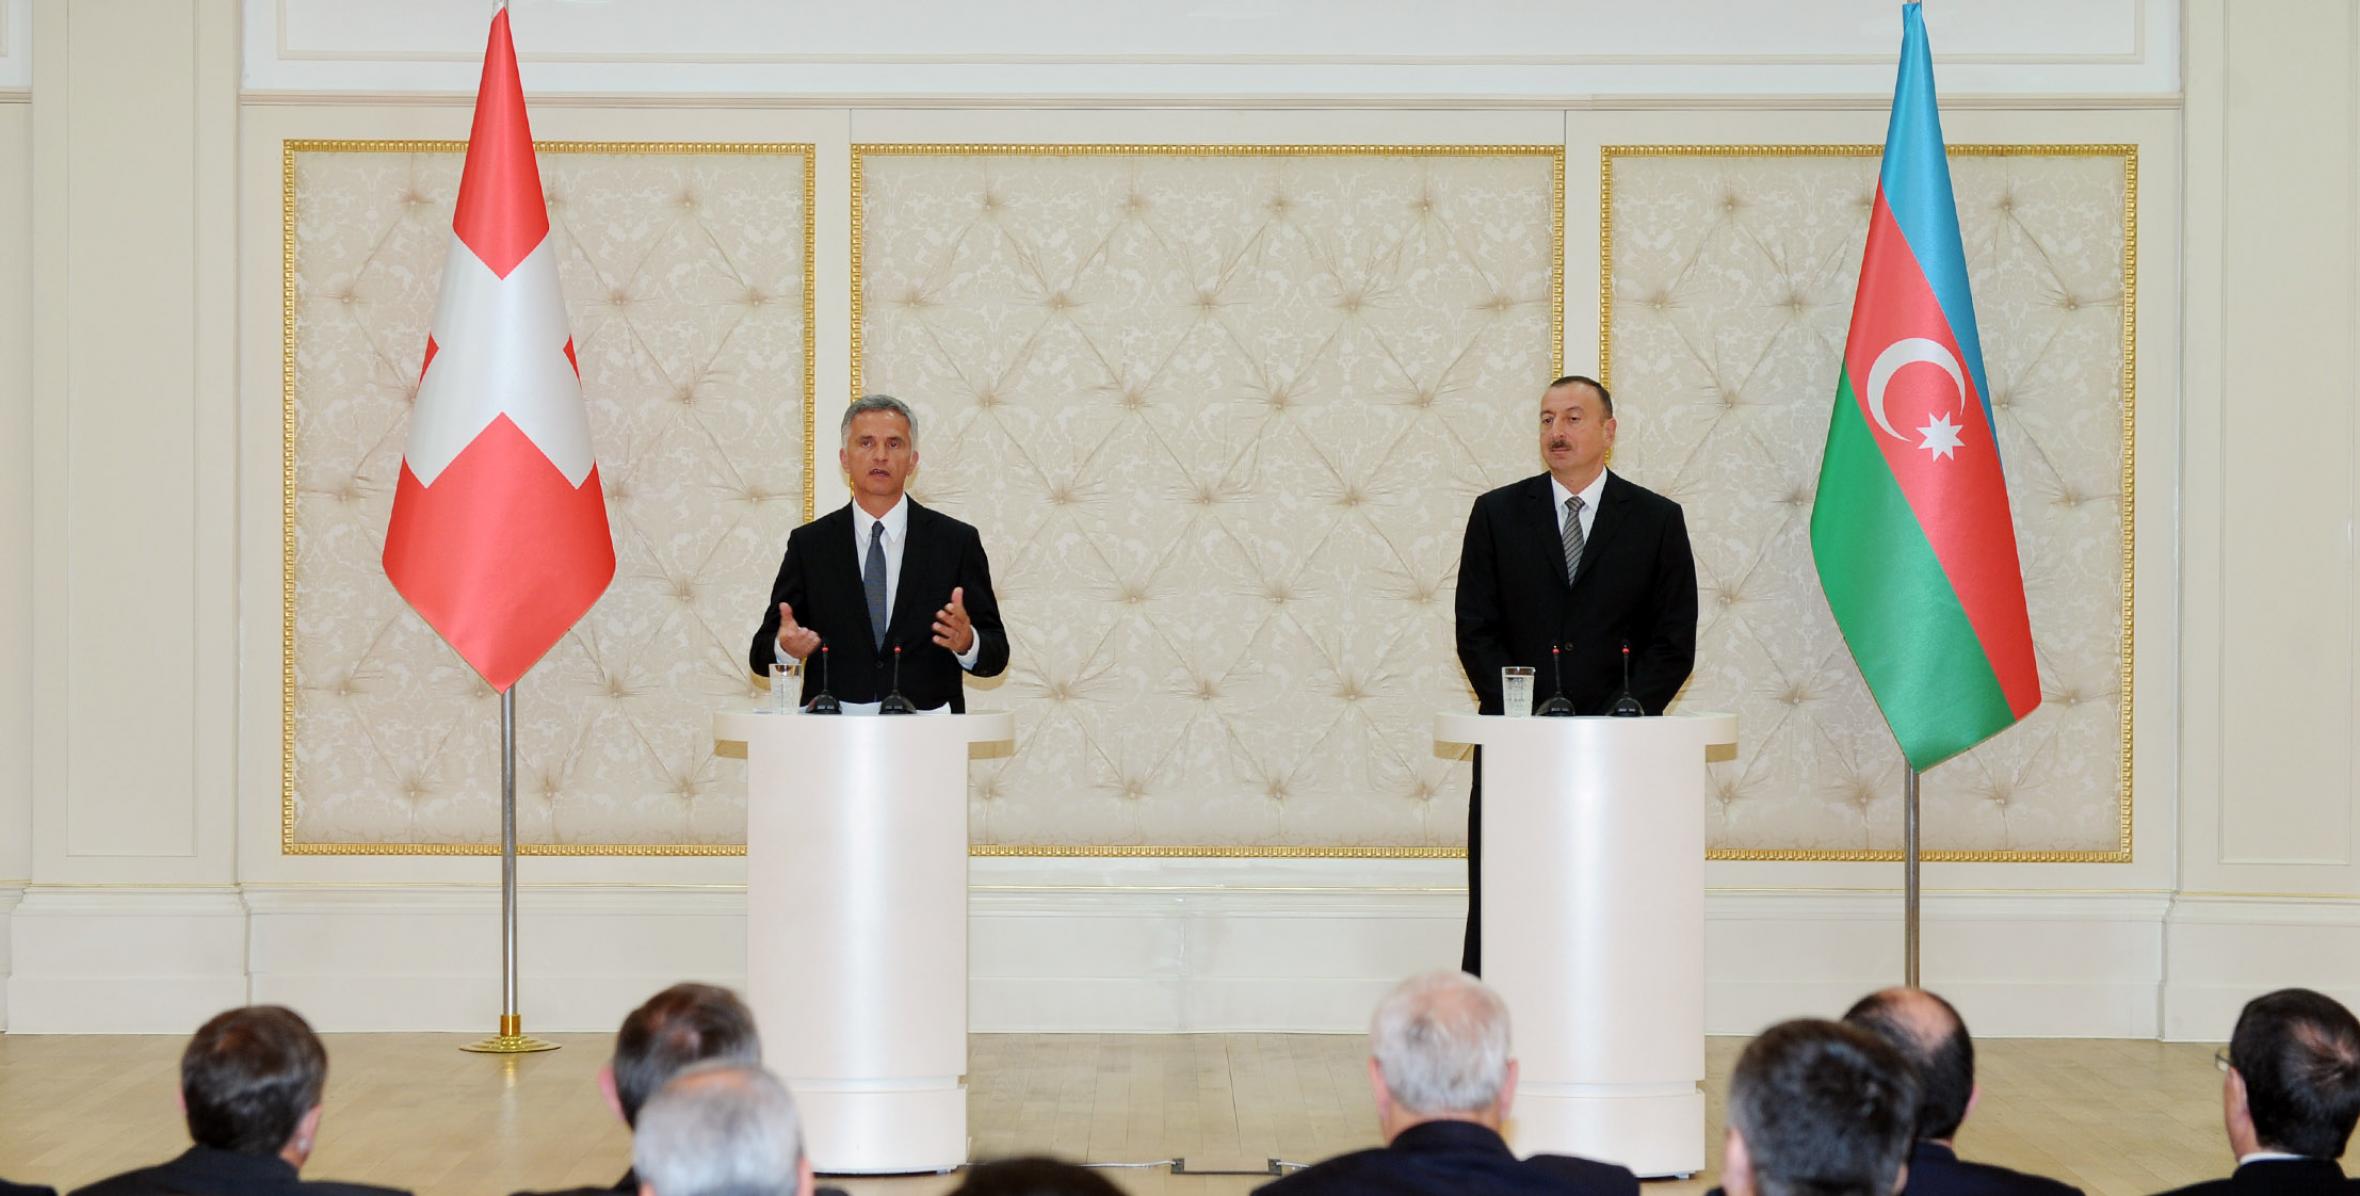 Ильхам Алиев и Президент Швейцарской Конфедерации Дидье Буркхальтер выступили с заявлениями для печати